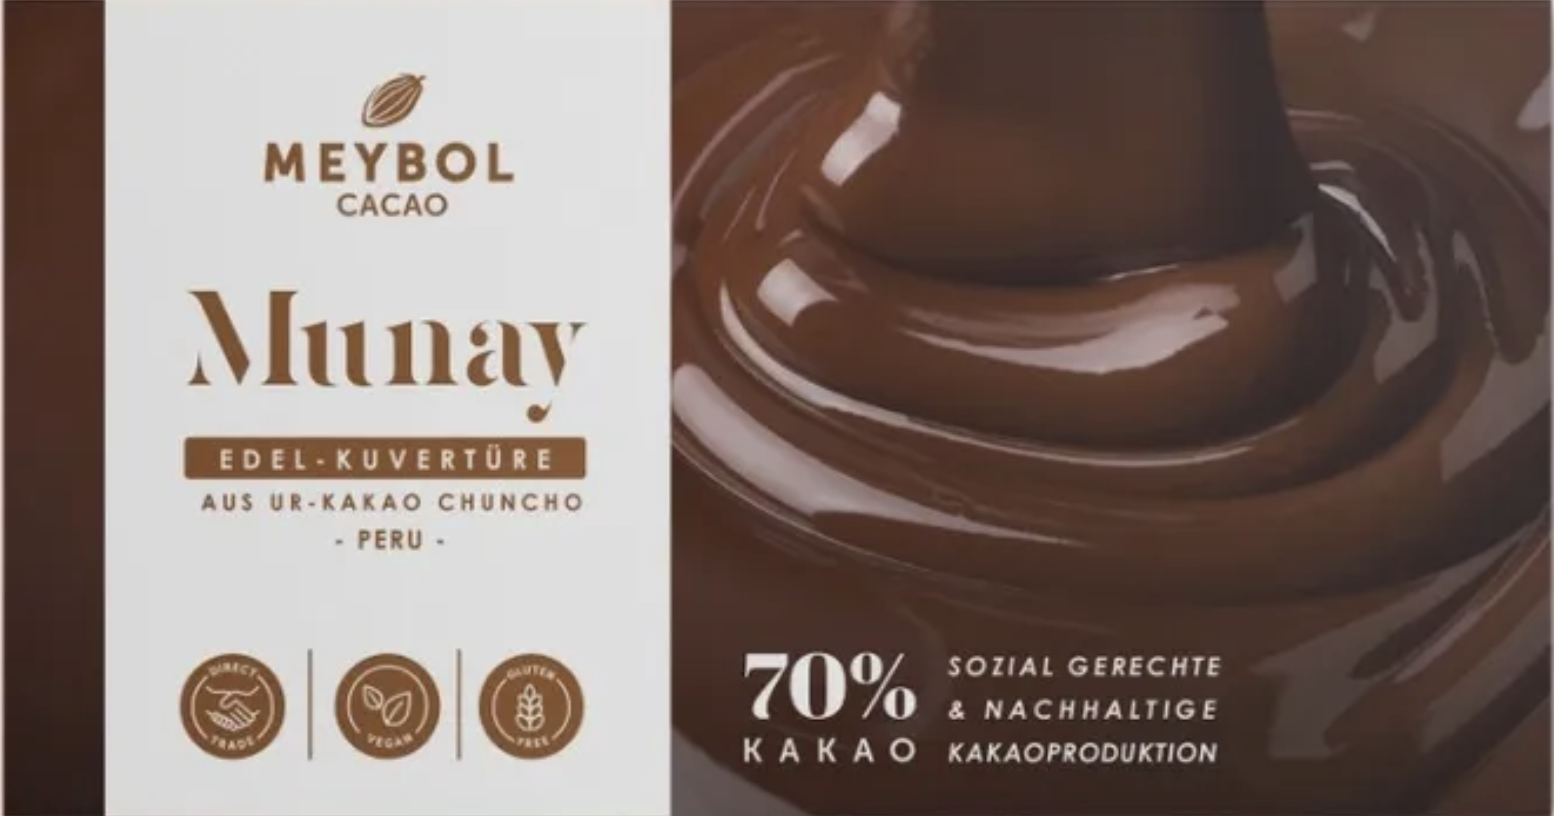 MEYBOL Cacao | Edel-Kuvertüre aus Chuncho-Urkakao »Munay« 70% | 100g MHD 21.04.2023